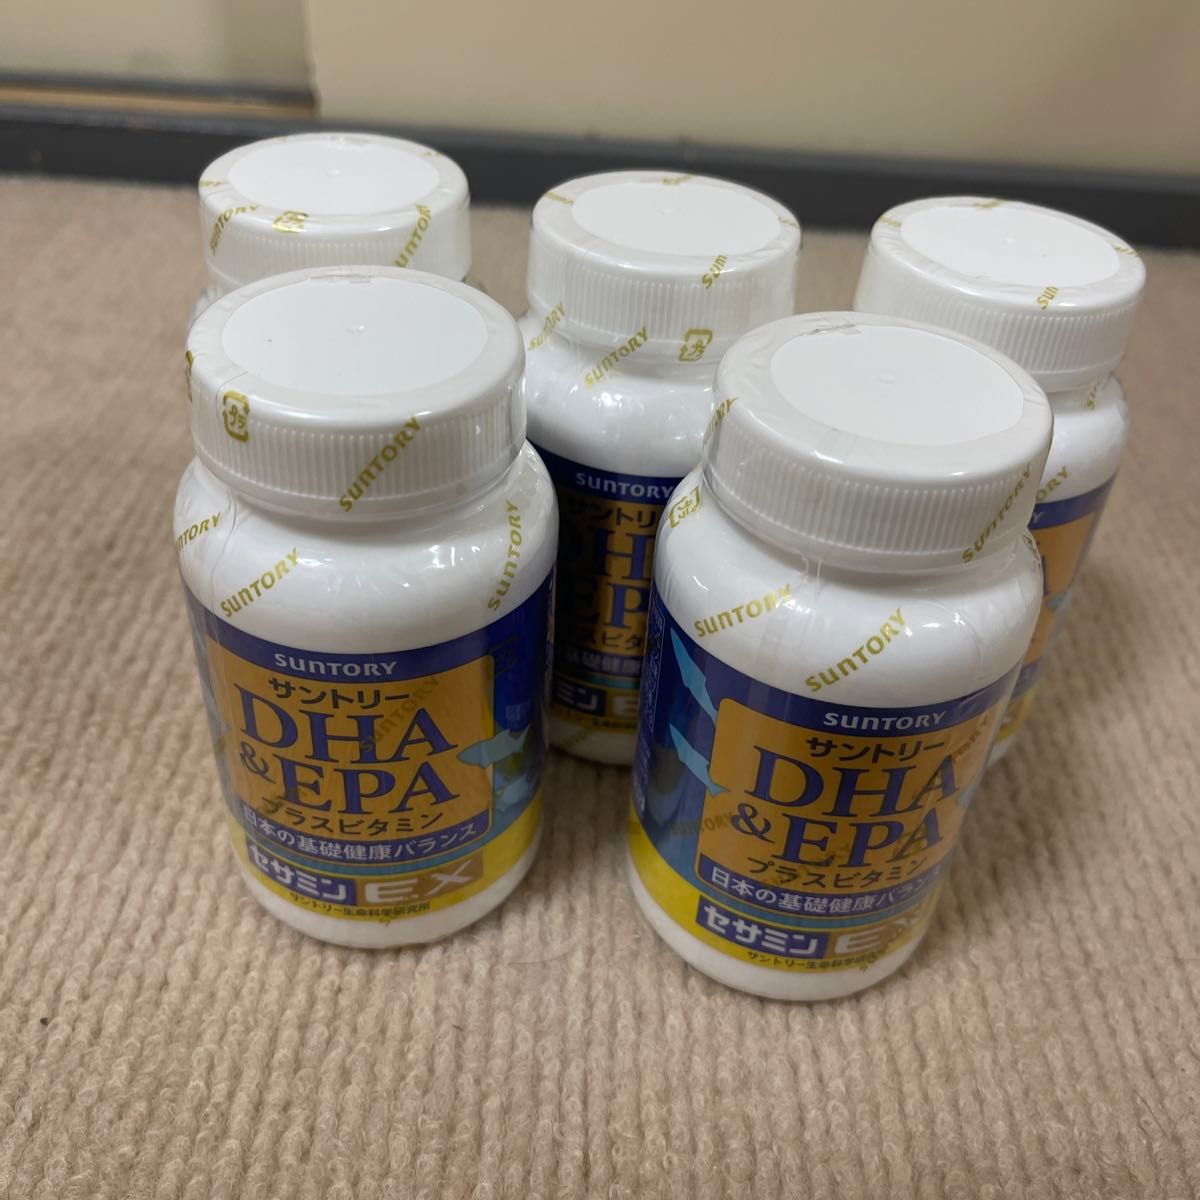 サントリー DHA EPA セサミンEX プラスビタミン サプリメント 5瓶セット